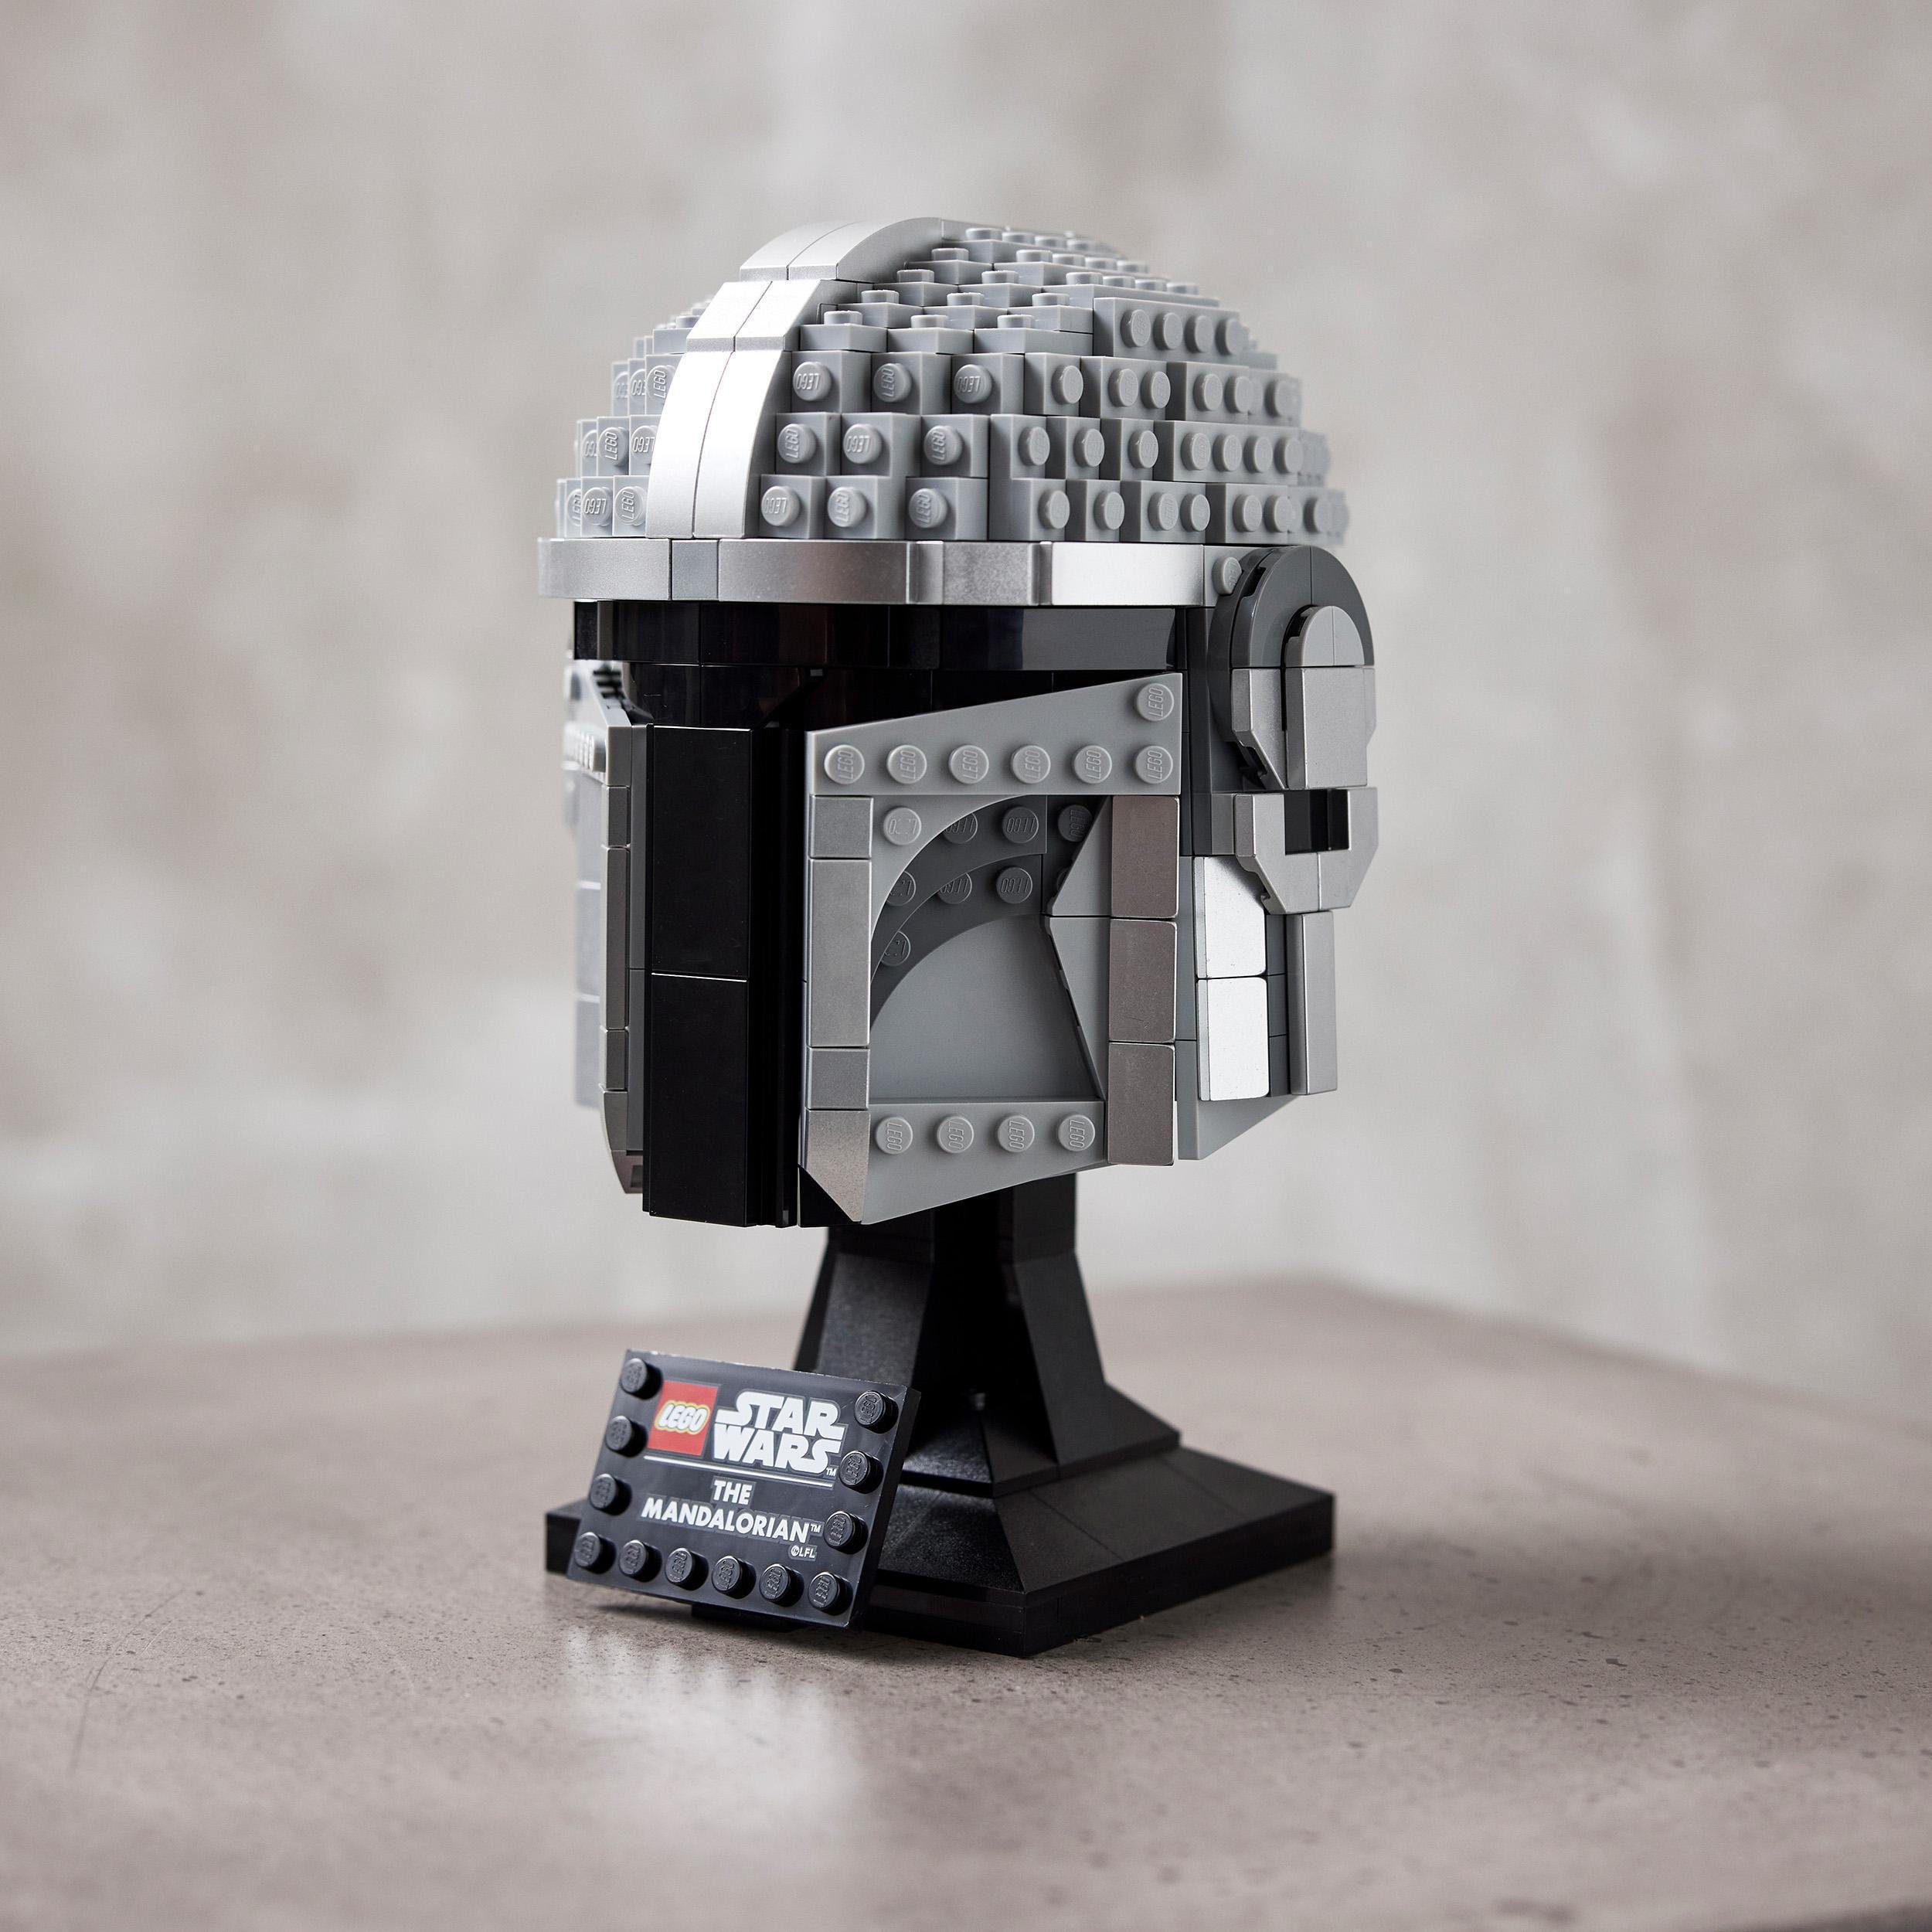 LEGO® Konstruktionsspielsteine Mandalorianer Helm (75328), Star St), (584 Made in Europe Wars™, LEGO®